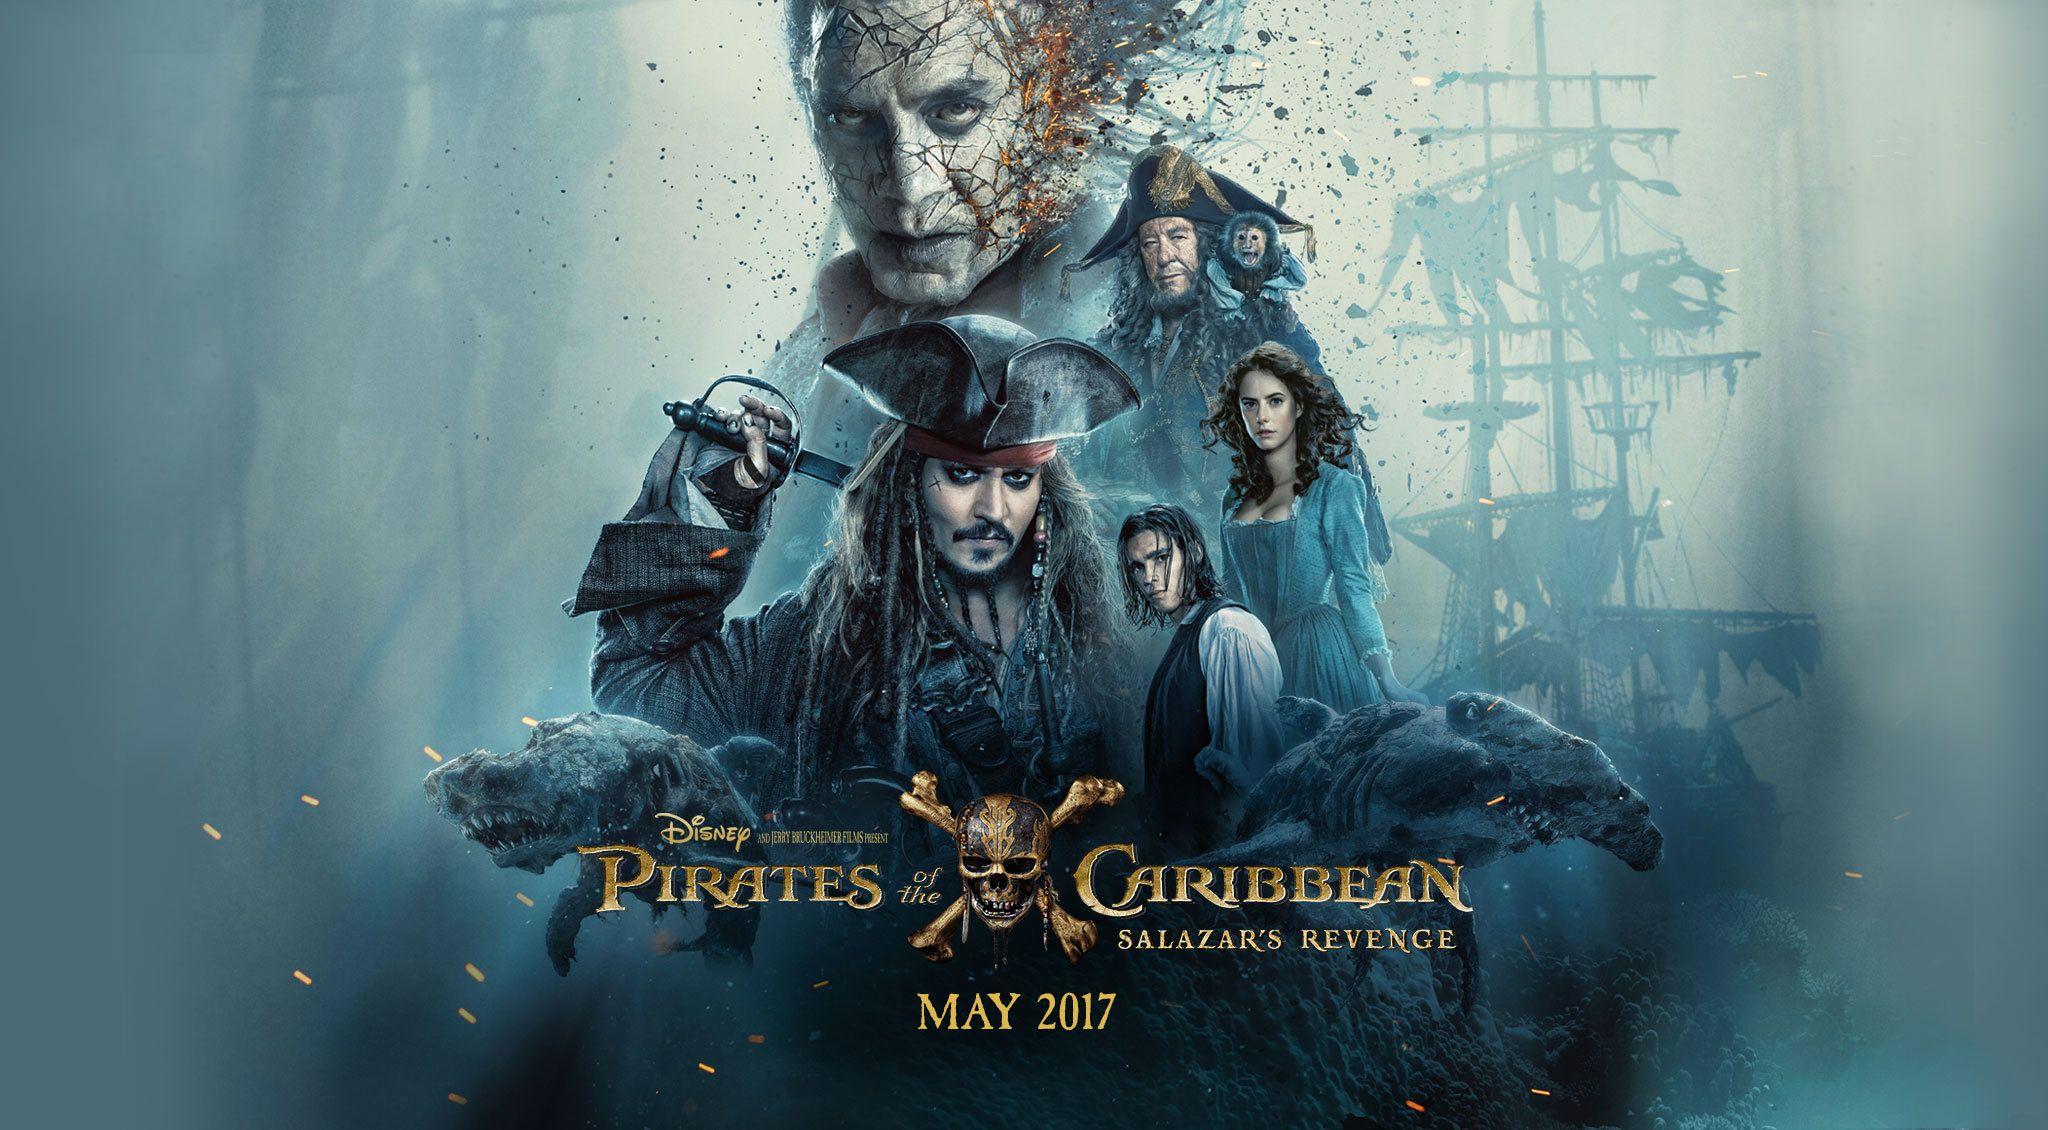 Gradebook: Pirates of the Caribbean: Dead Men Tell No Tales. We